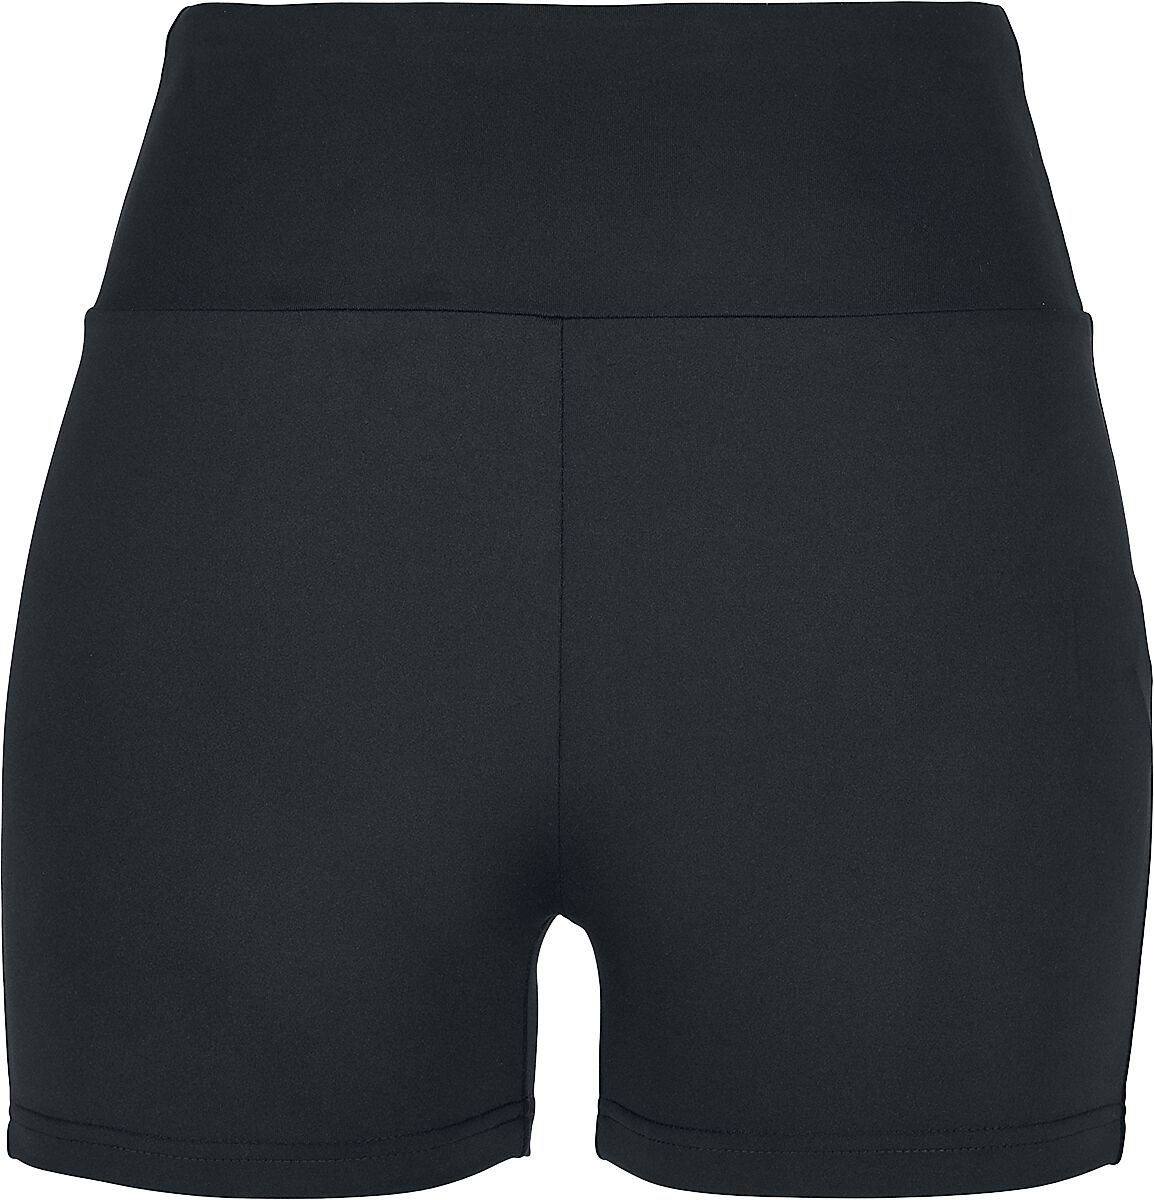 Urban Classics Hotpant - Ladies High Waist Short Cycle Hot Pants - XS bis XL - für Damen - Größe XL - schwarz